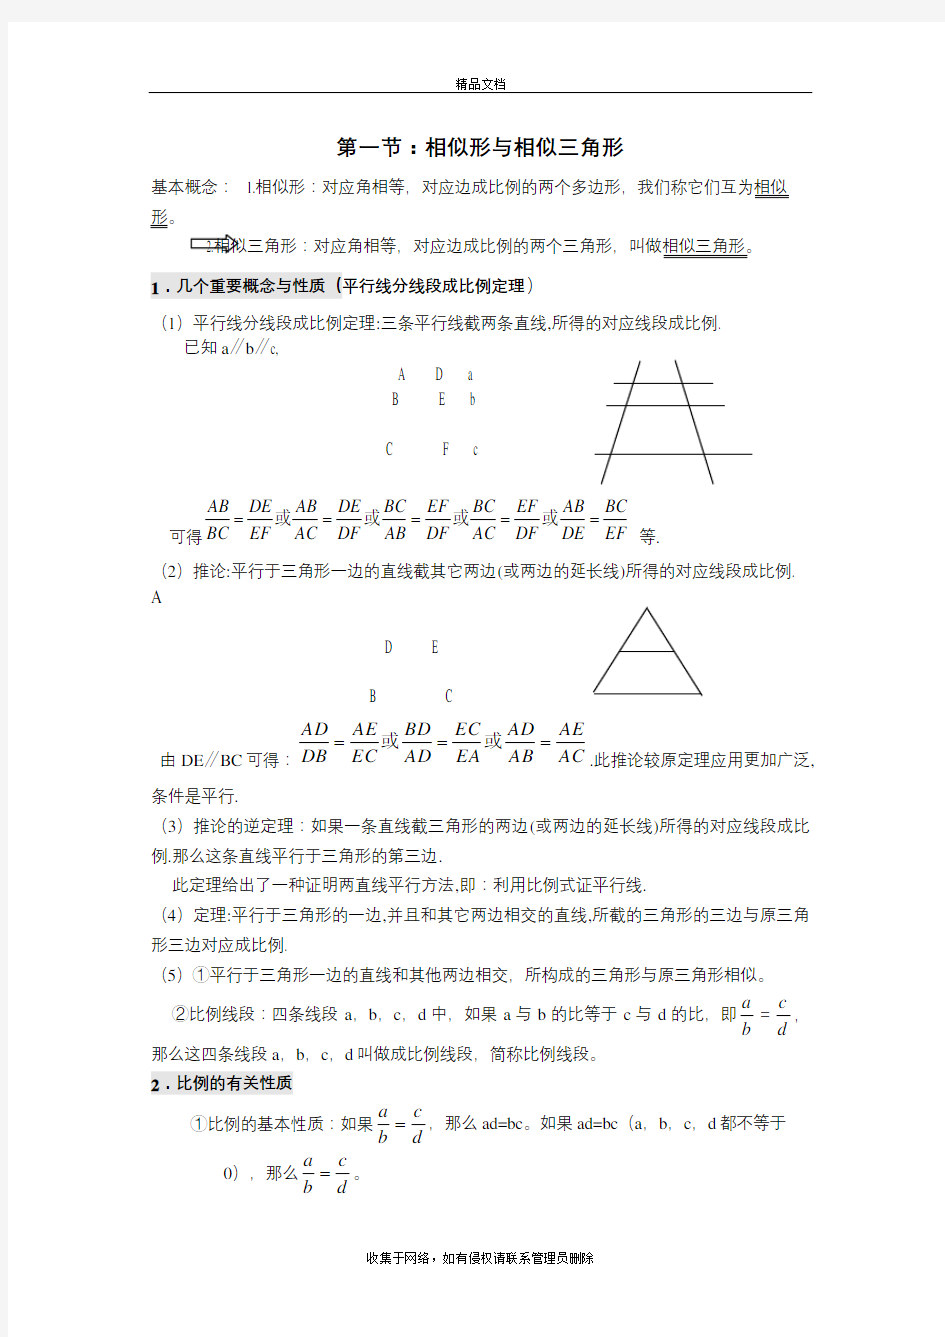 相似三角形分类整理(超全)上课讲义